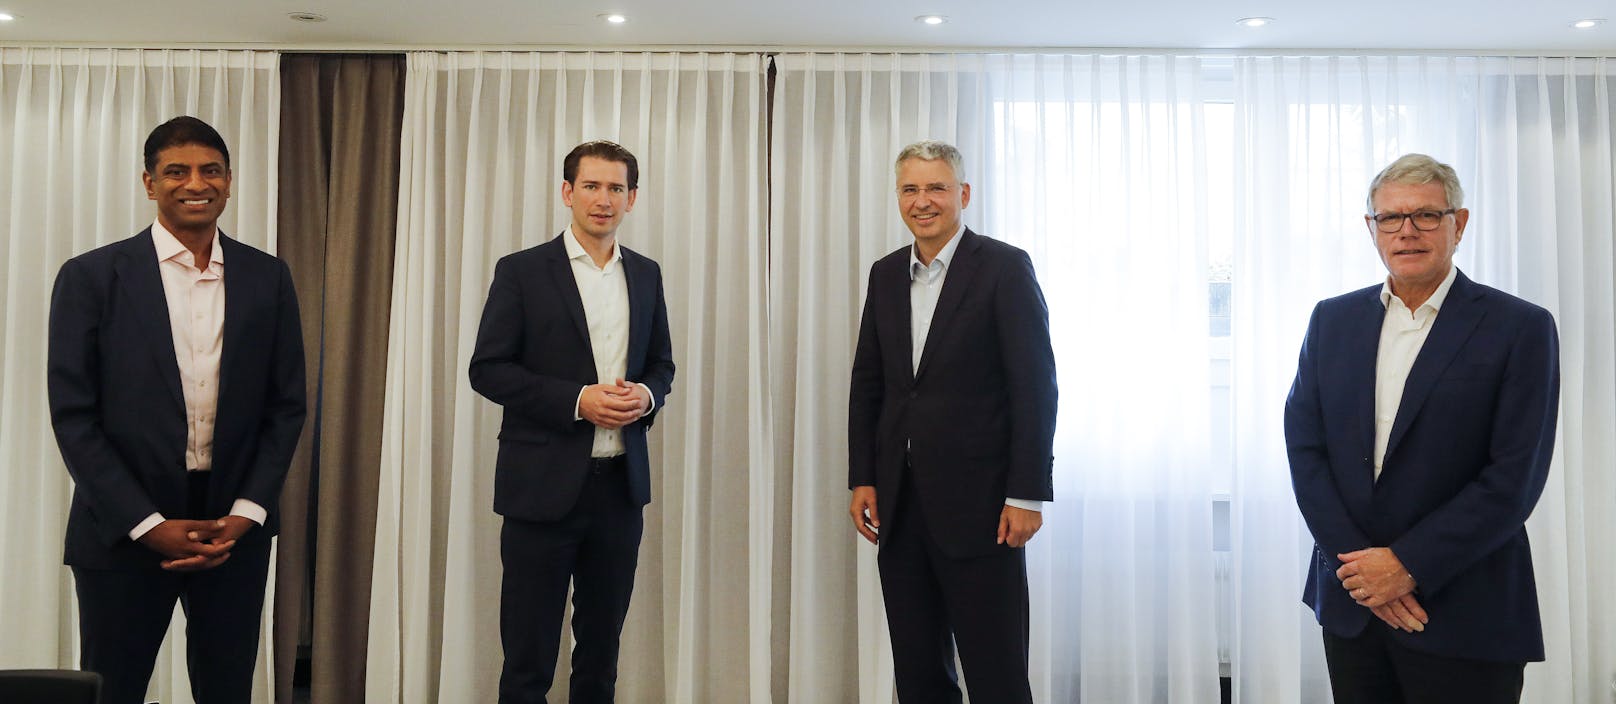  Bundeskanzler Sebastian Kurz mit den CEOs von Roche Severin Schwan, Novartis Vasant Narasimhan und Lonza Pierre-Alain Ruffieux 